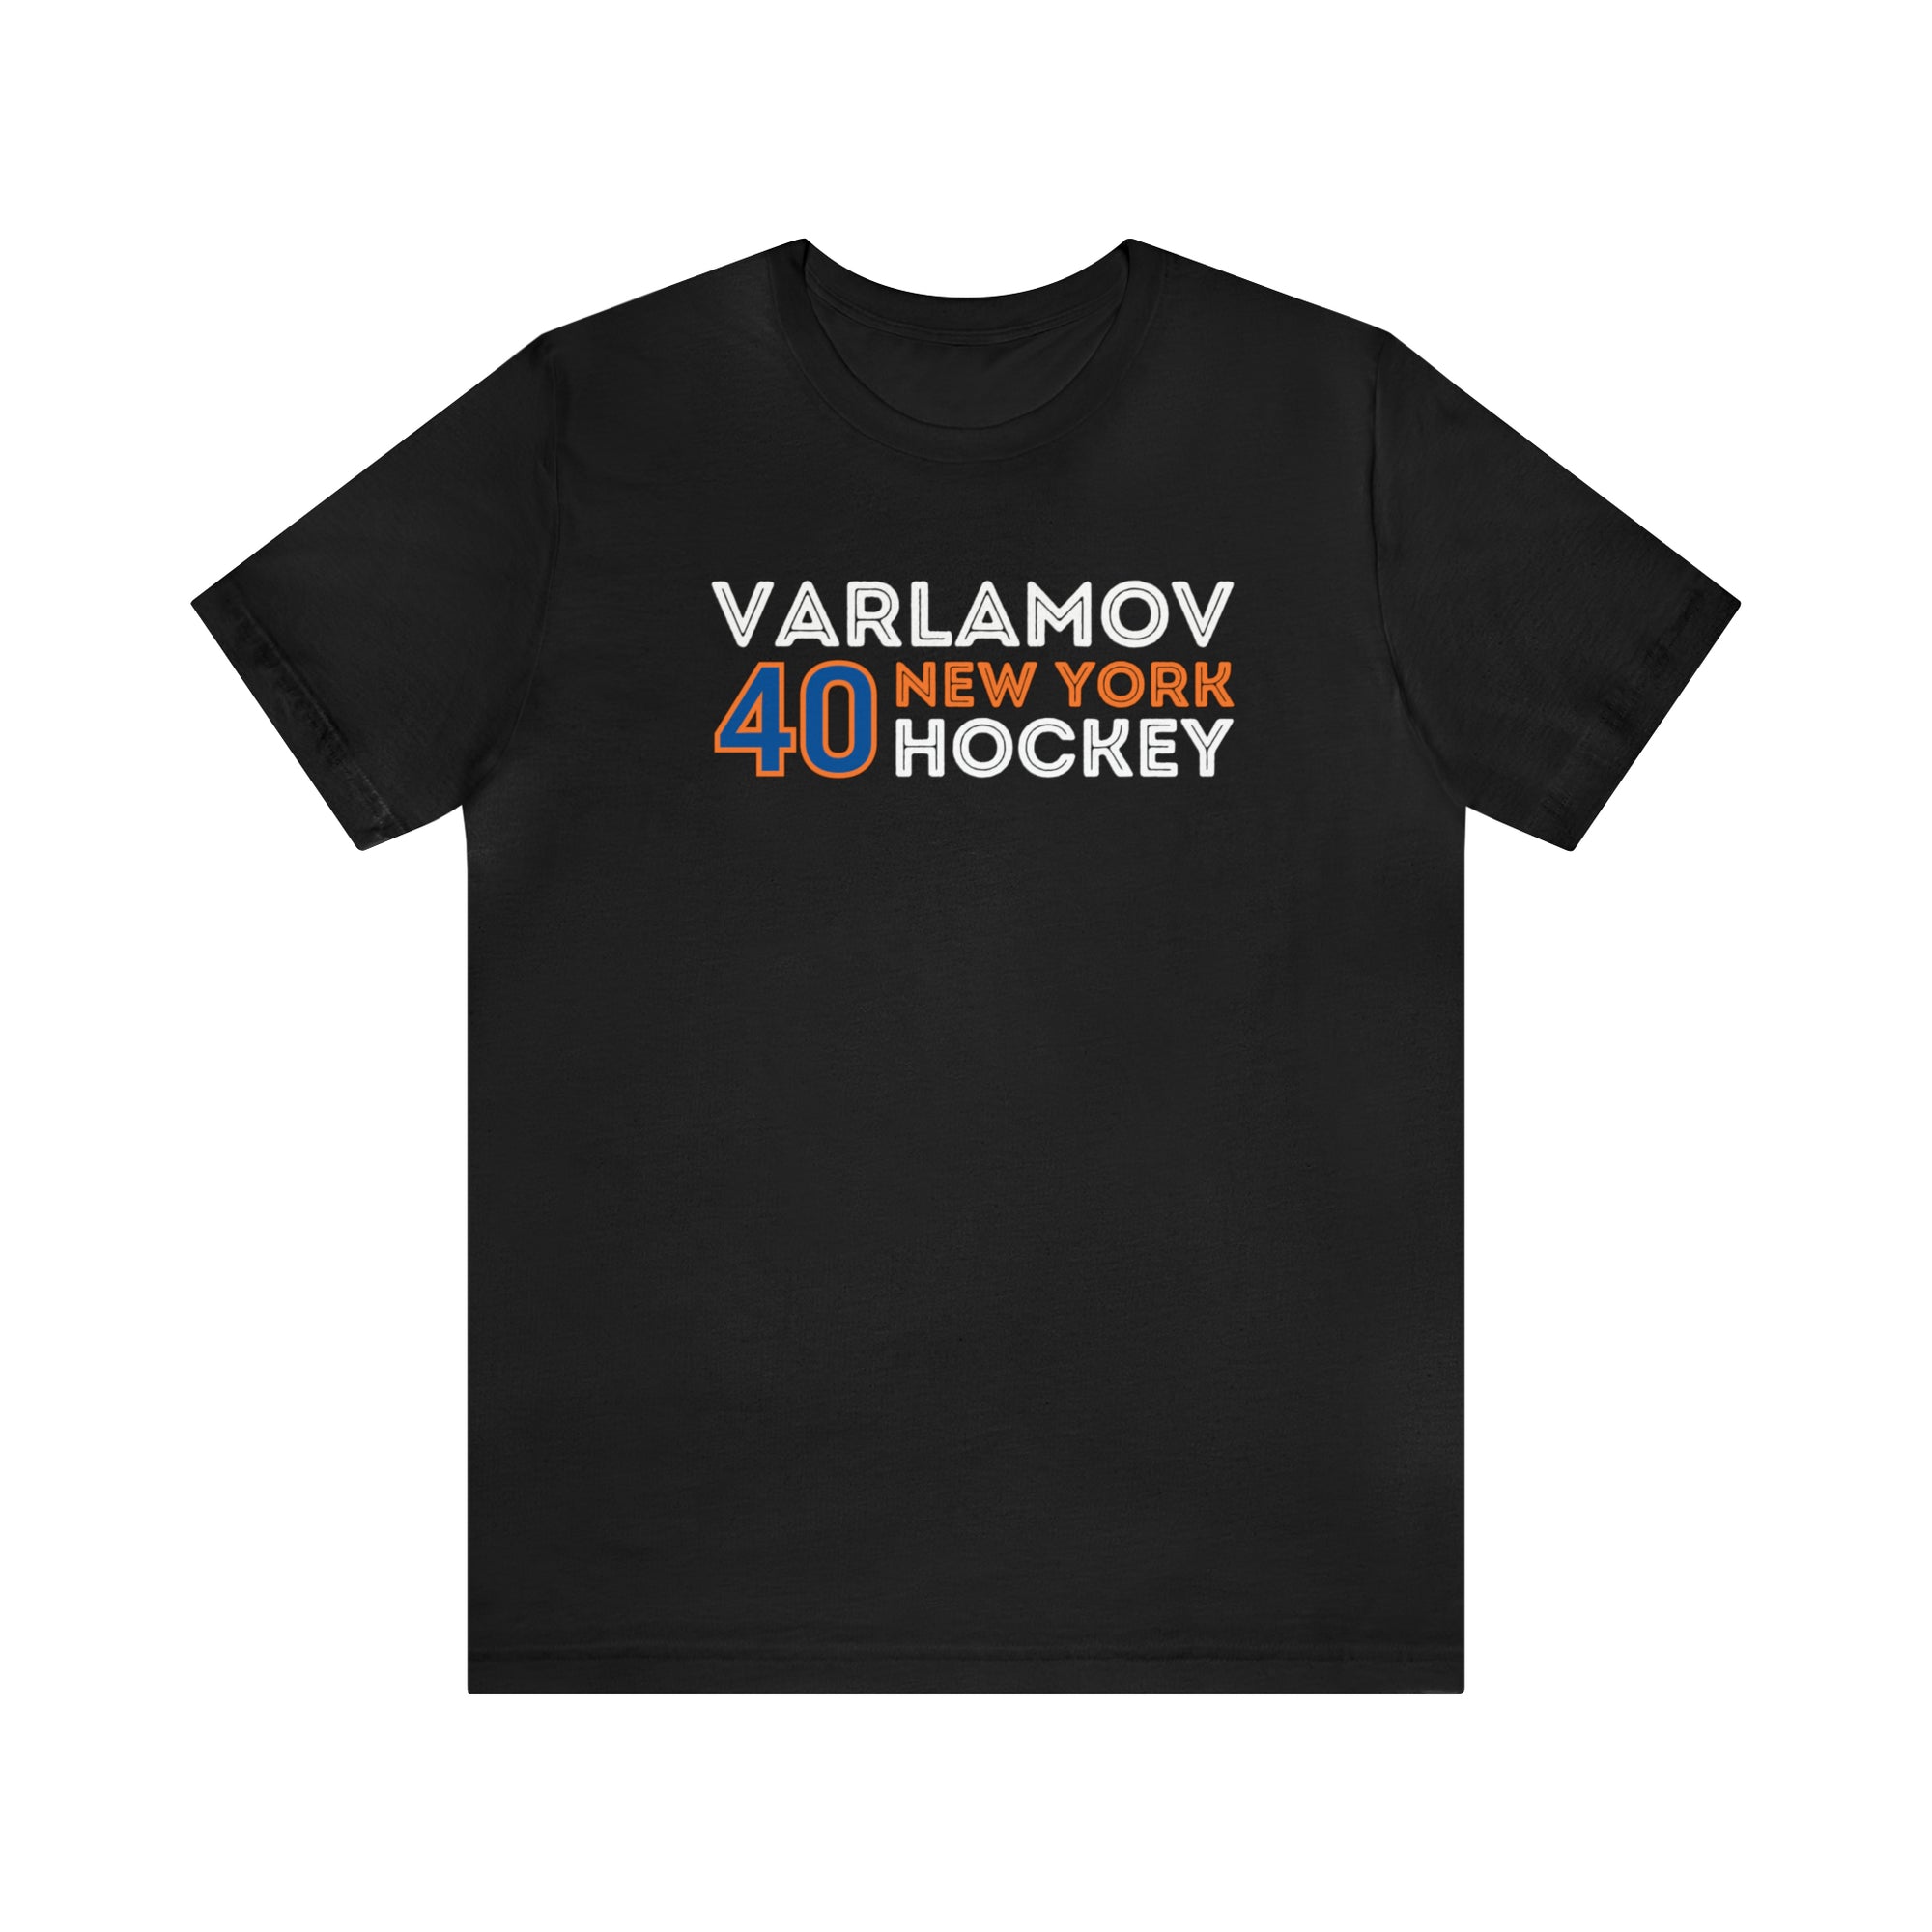 Varlamov 40 New York Hockey Grafitti Wall Design Unisex T-Shirt